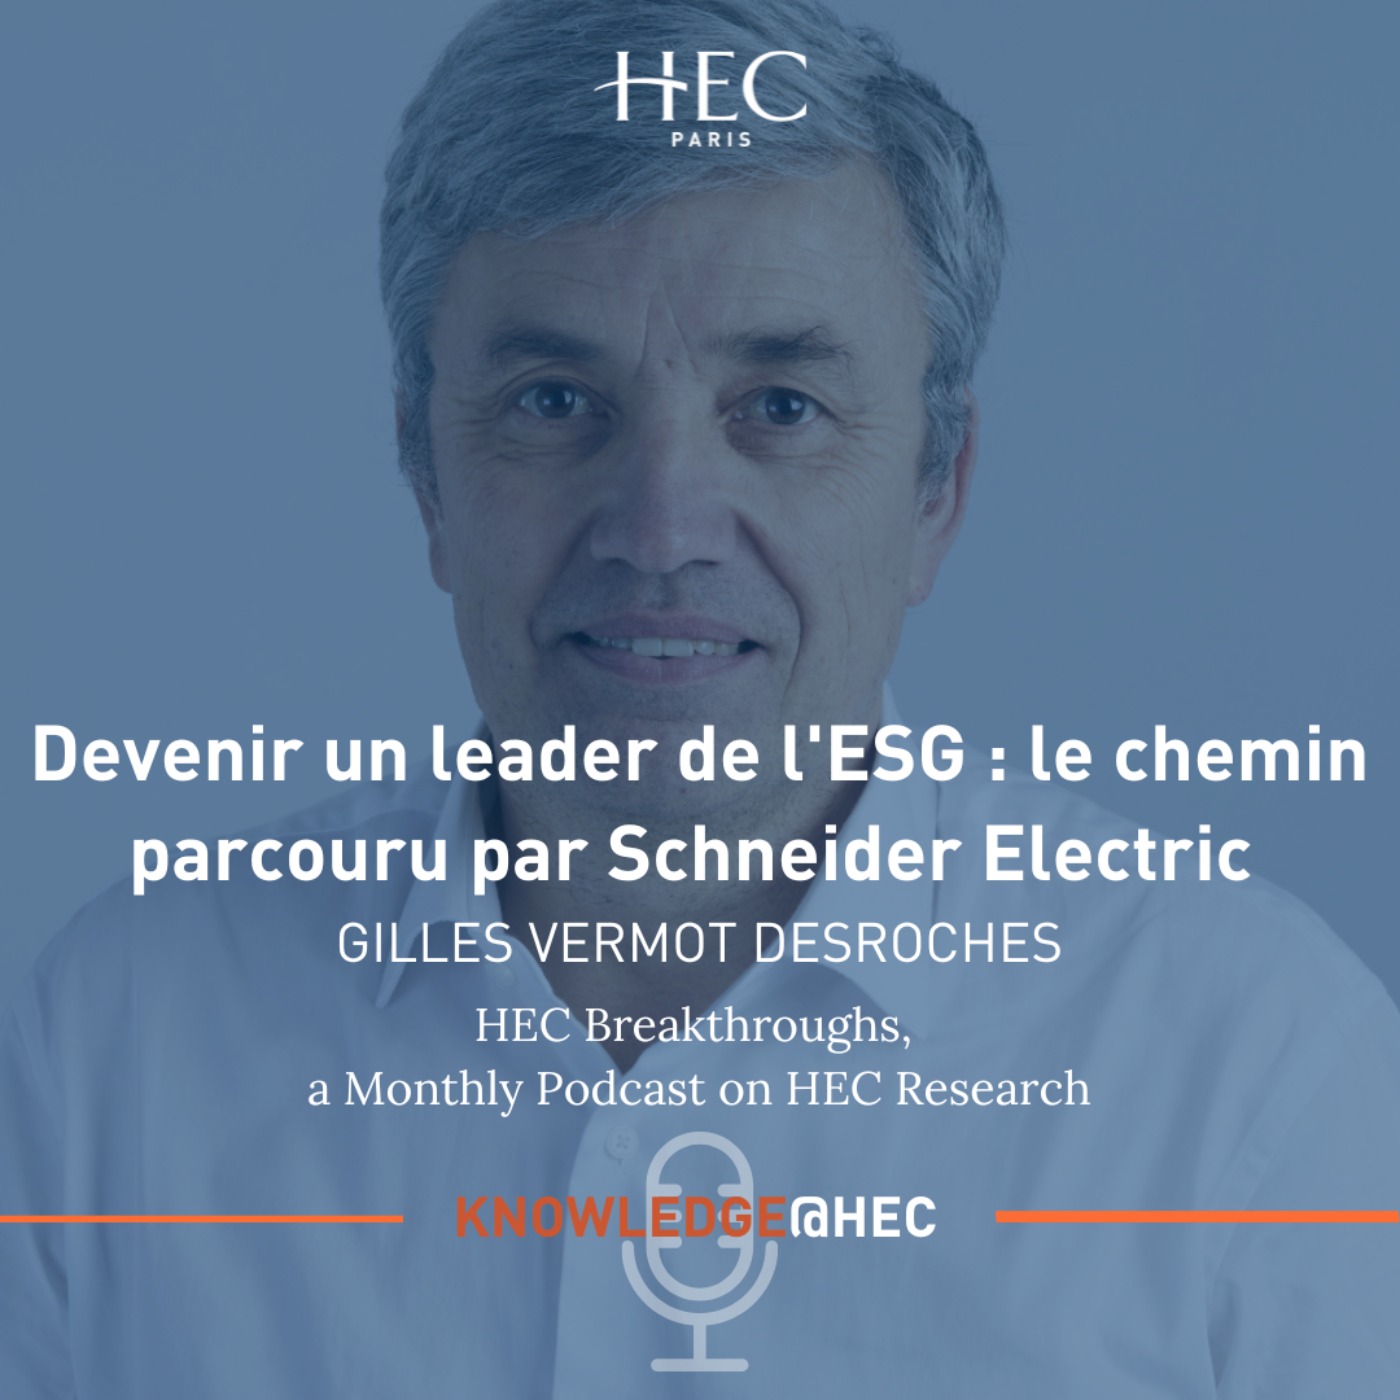 Devenir un leader de l'ESG : le chemin parcouru par Schneider Electric